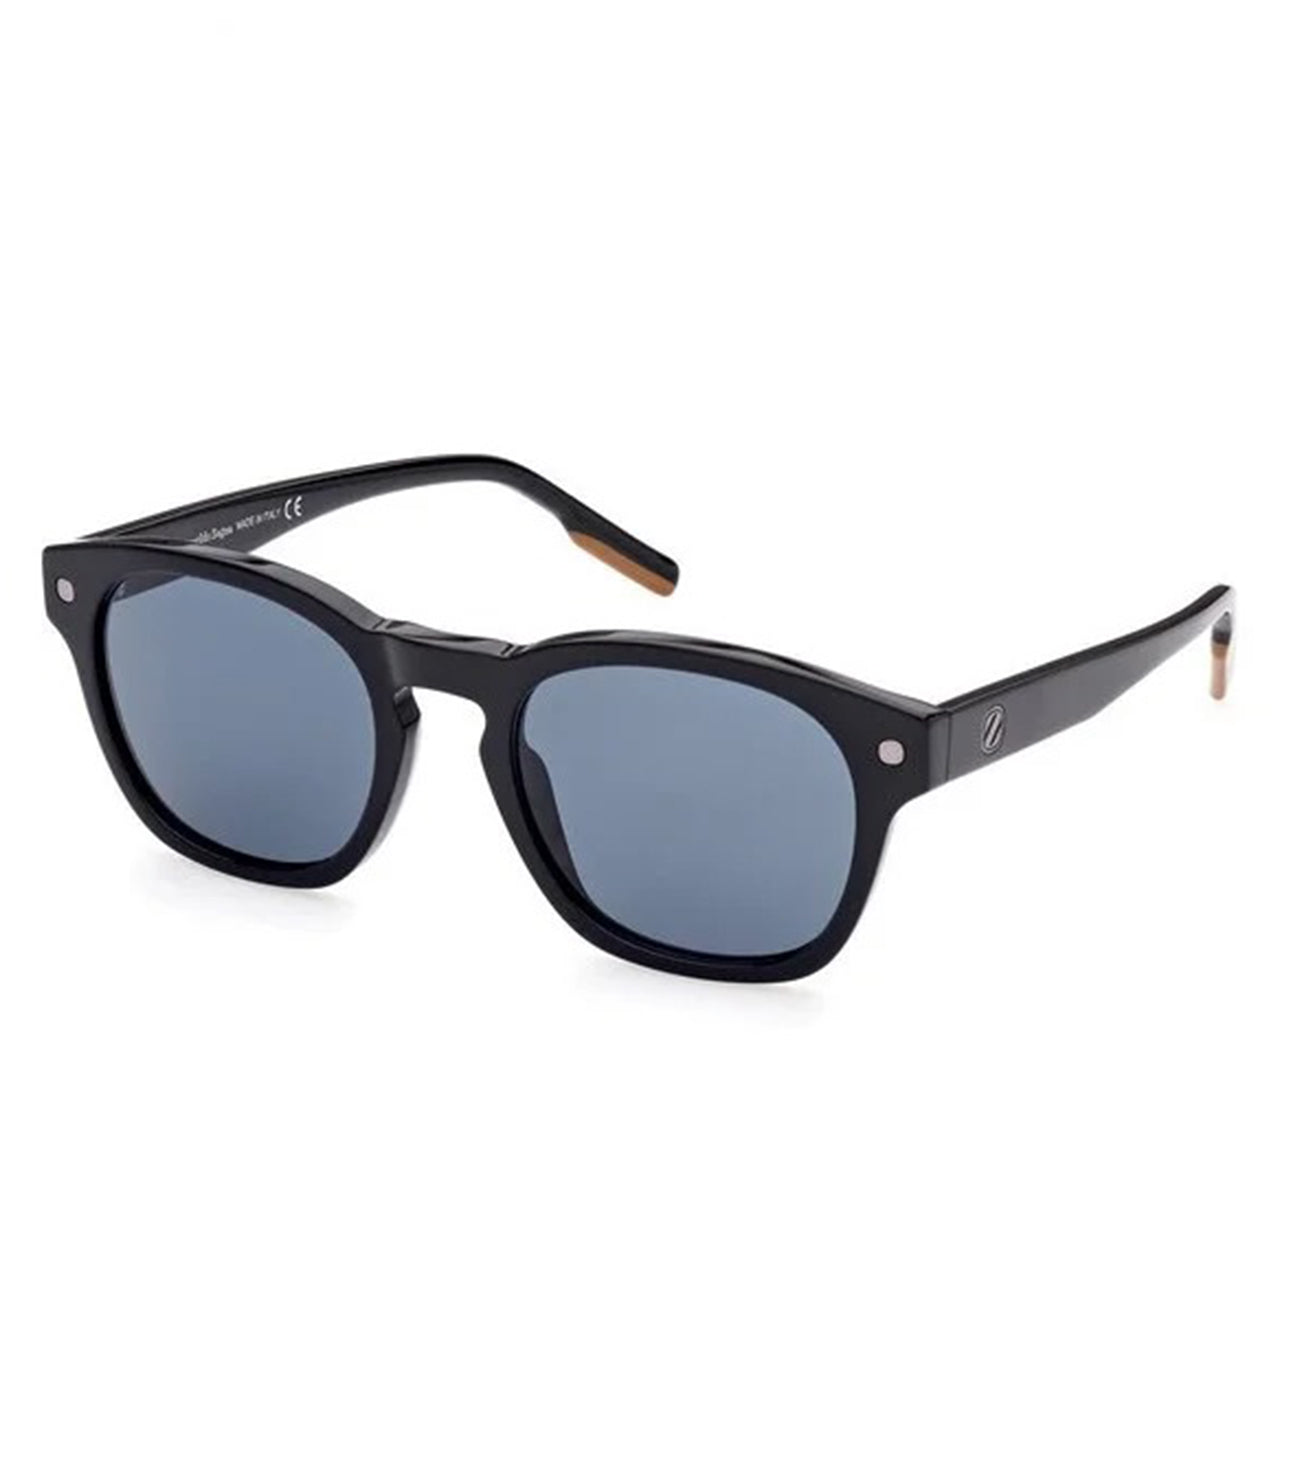 Zegna Men's Blue Round Sunglasses